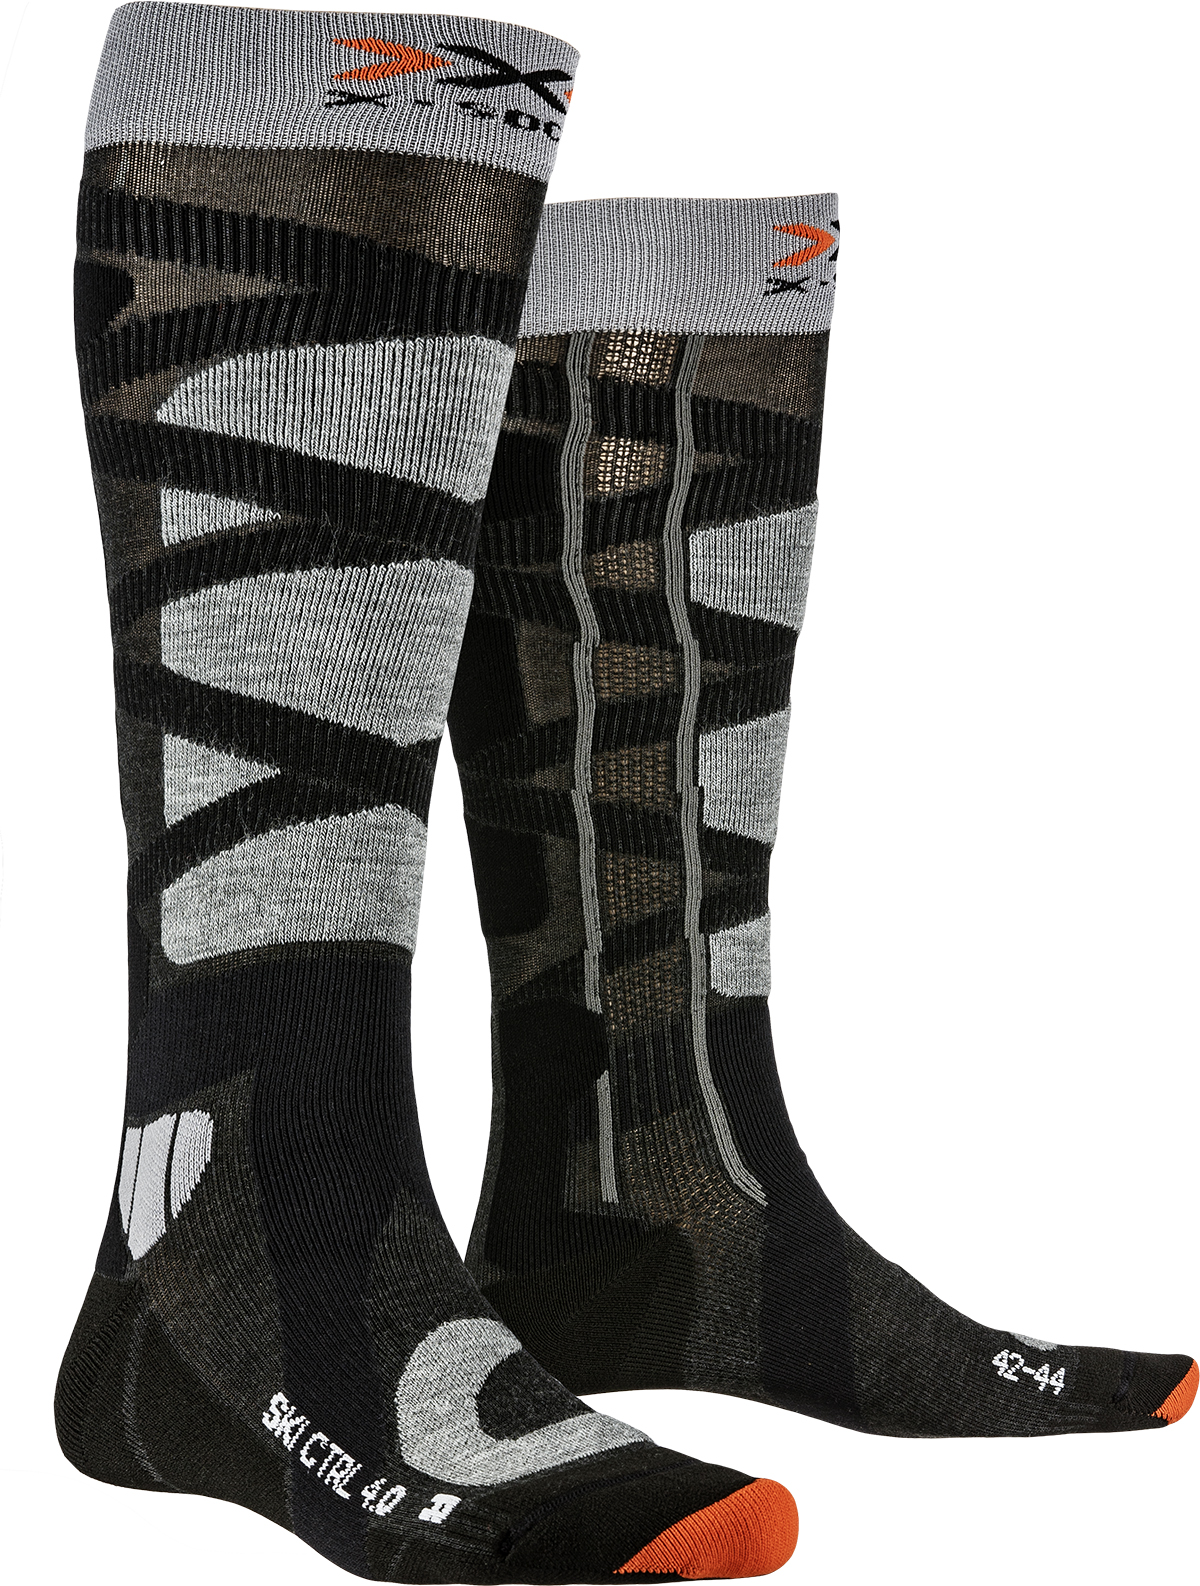 Гольфы X-Socks Ski Control 4.0 Anthracite Melange/Stone Grey Melange (42-44)